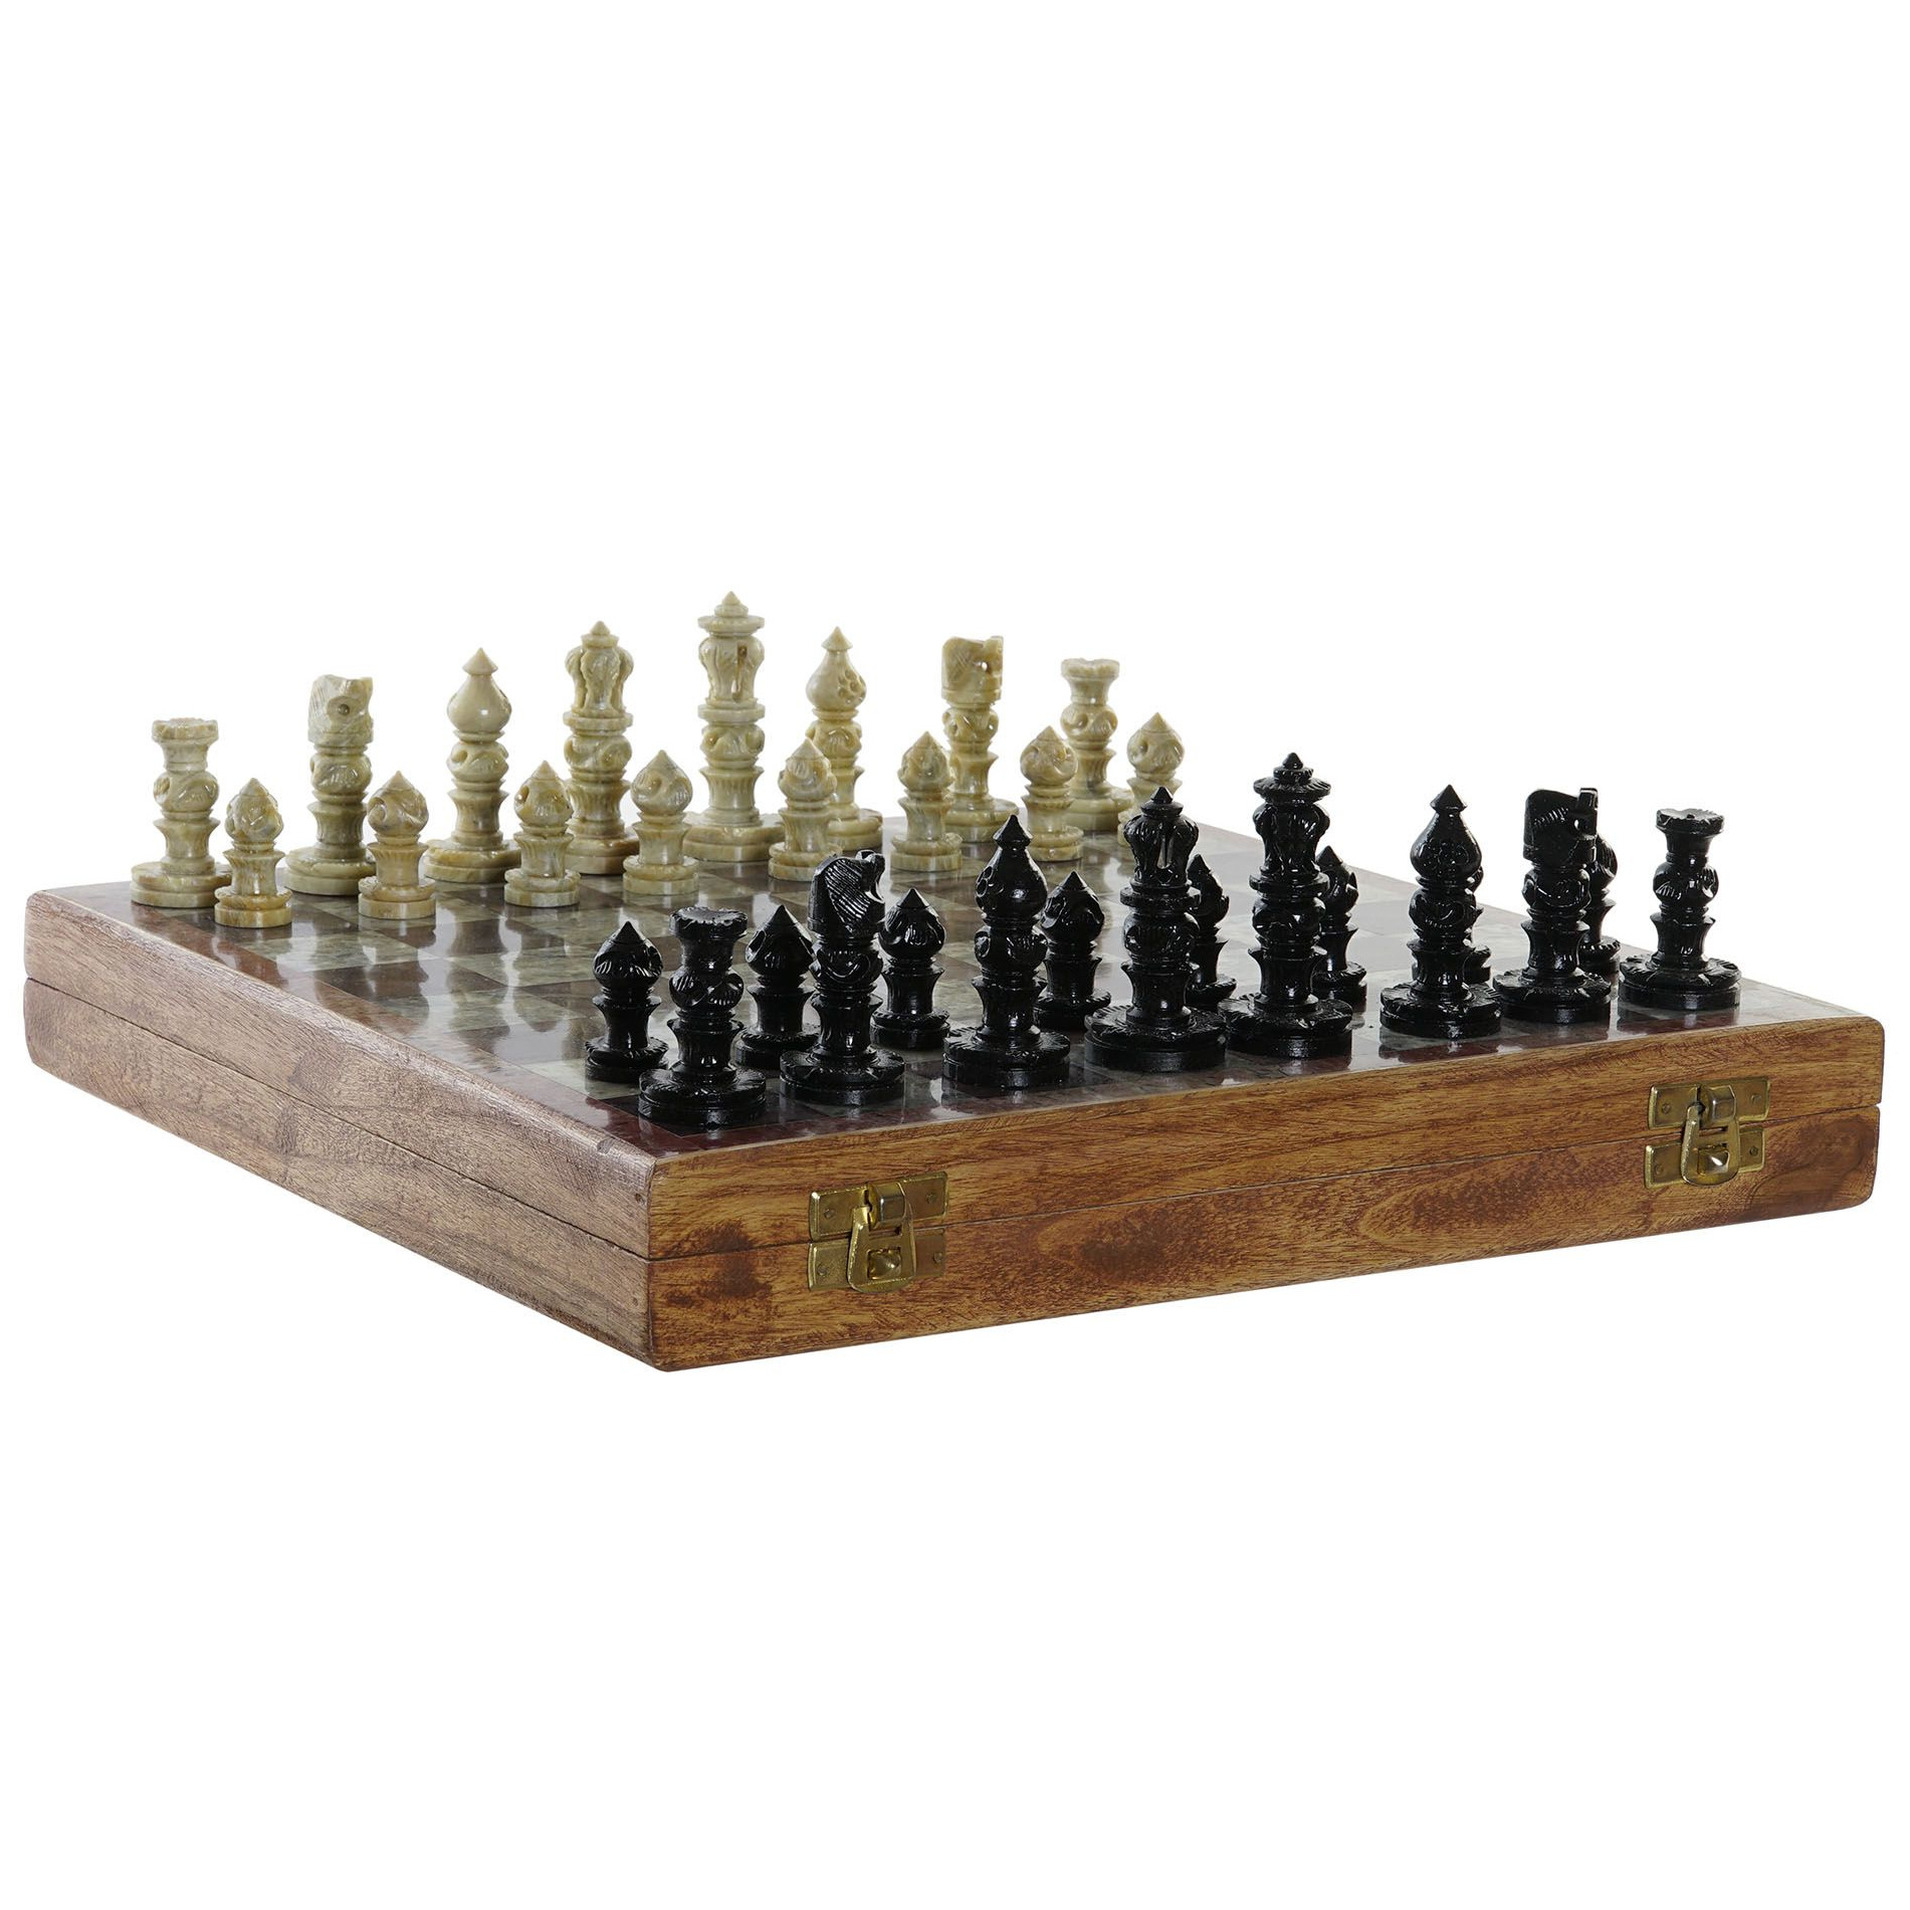 Min Klokje corruptie Luxe houten schaakspel in kist/koffer met stenen schaakstukken 30 x 30 cm -  Schaken & Dammen - Bellatio warenhuis